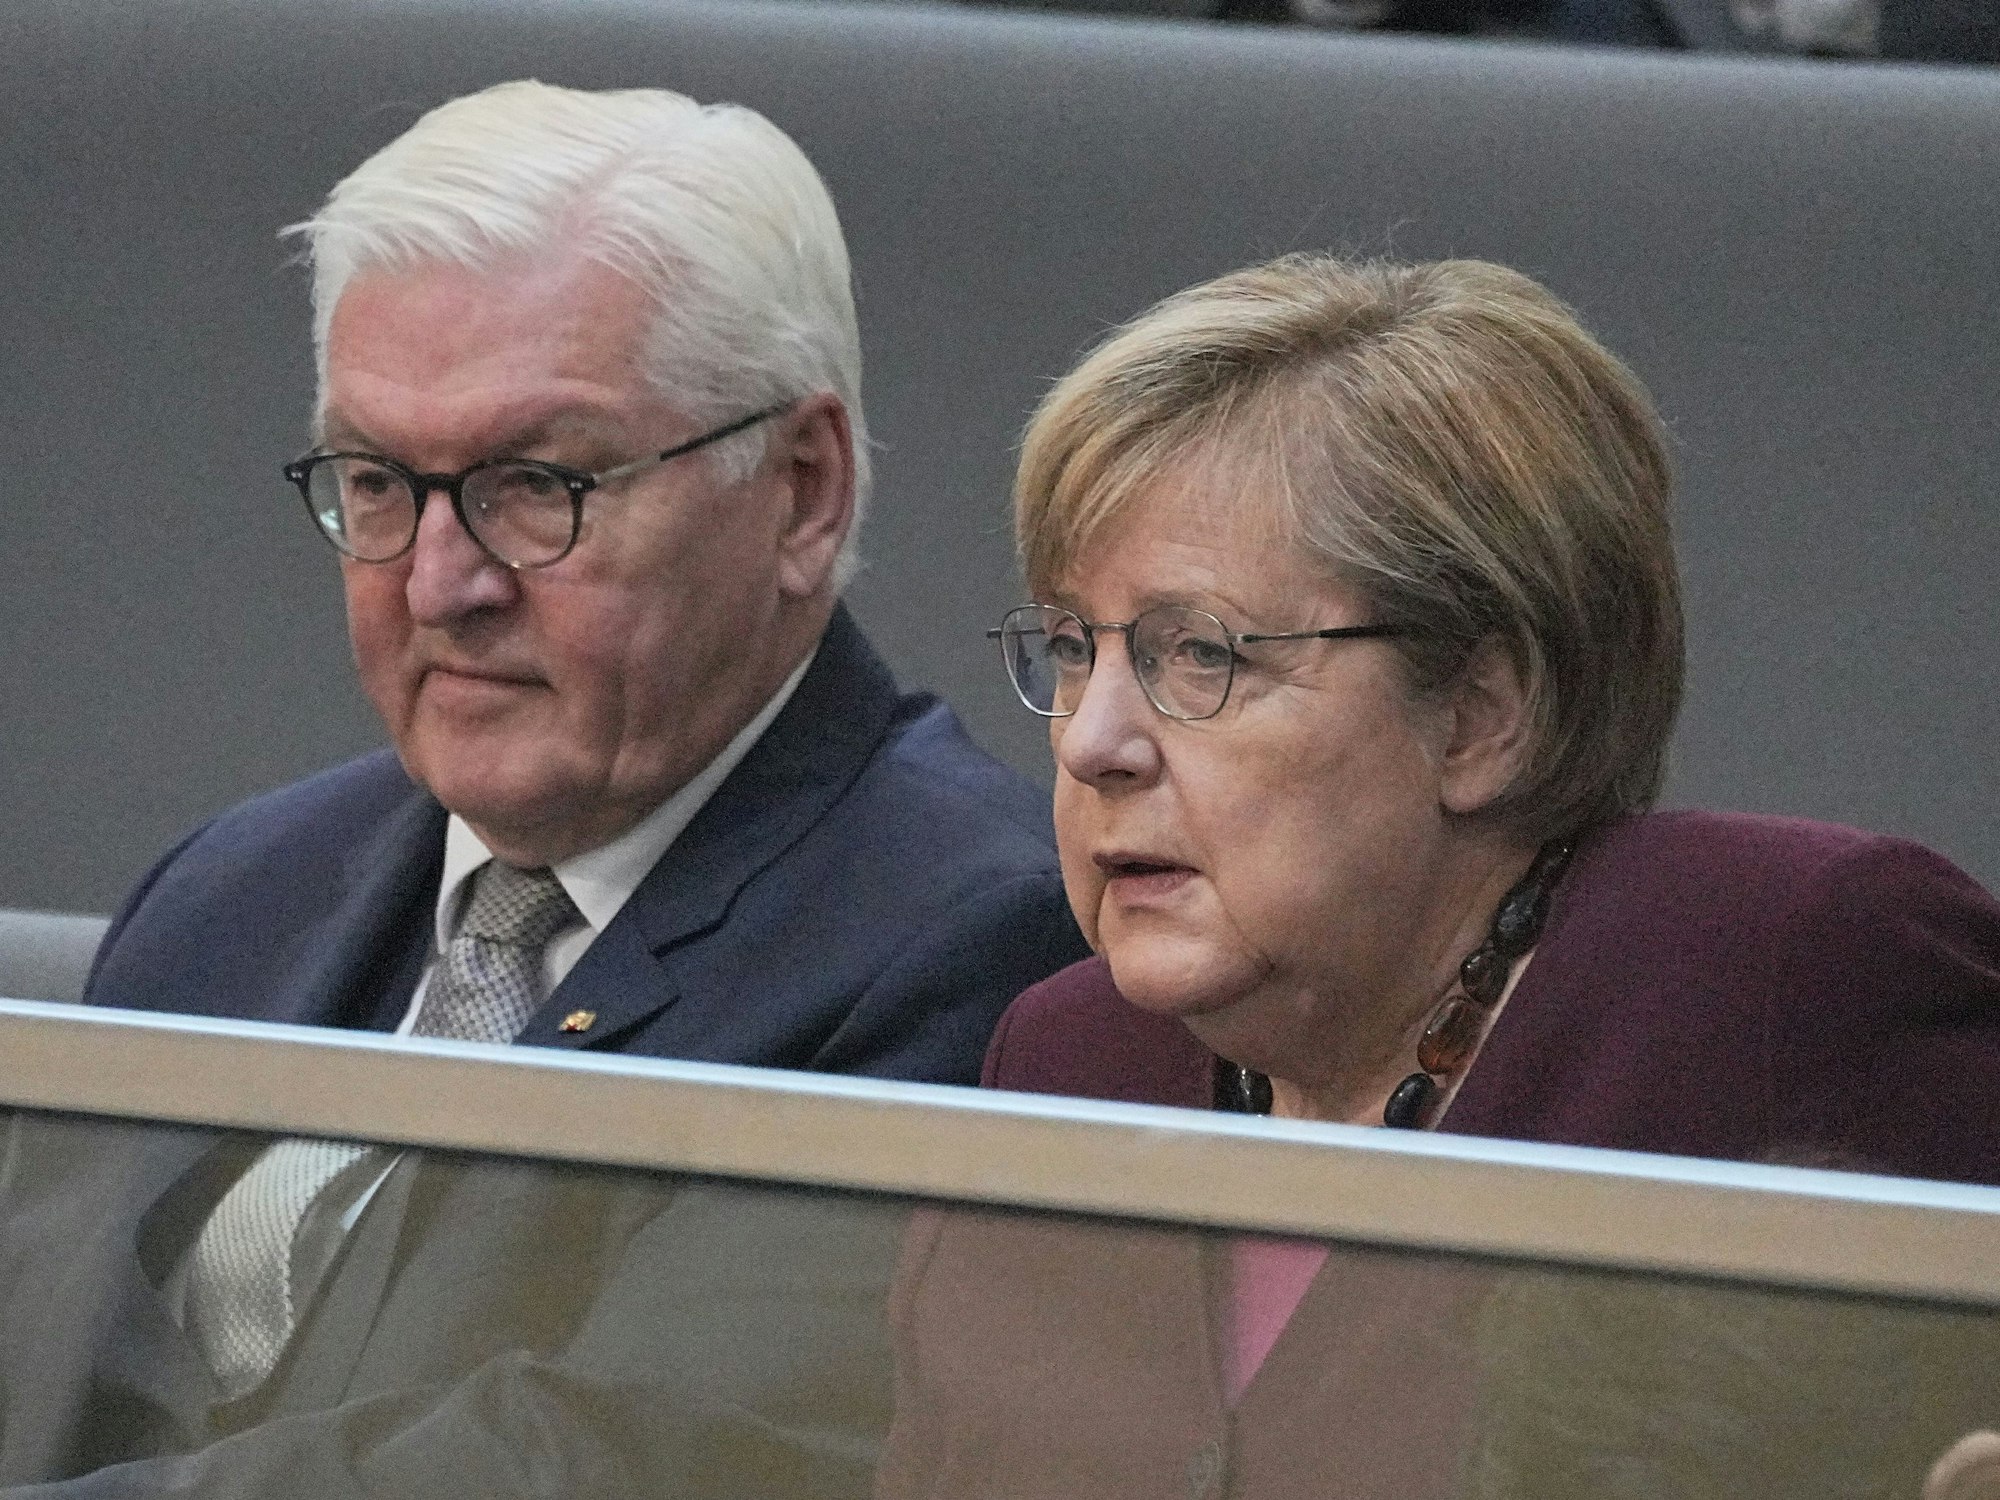 Angela Merkel (mit Brille) am 26.10.2021 neben Bundespräsident Frank-Walter Steinmeier (wie immer mit Brille).